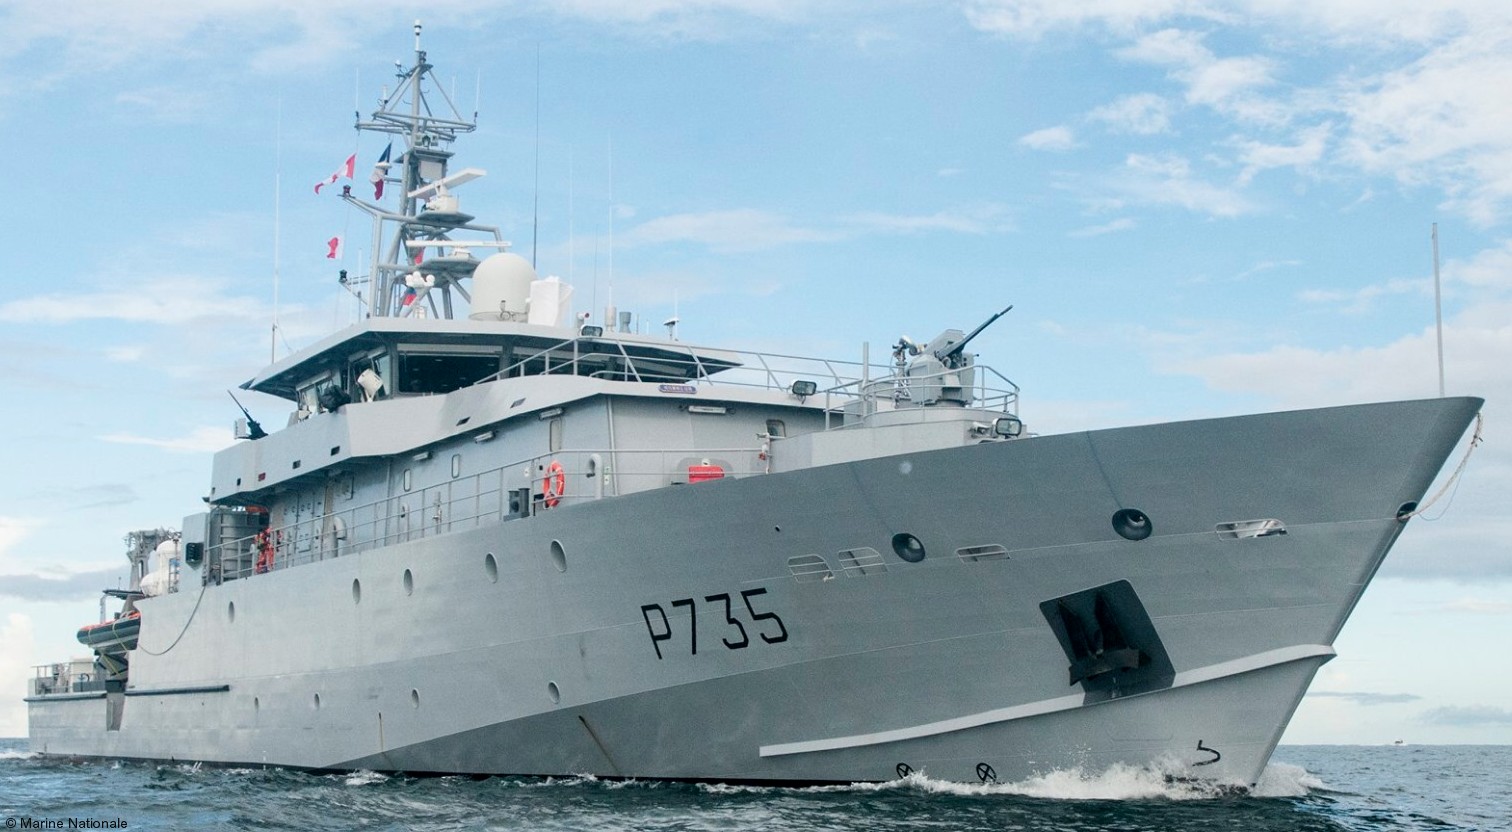 p-735 la combattante confiance class offshore patrol vessel opv patrouilleur antilles guyane pag french navy marine nationale 05